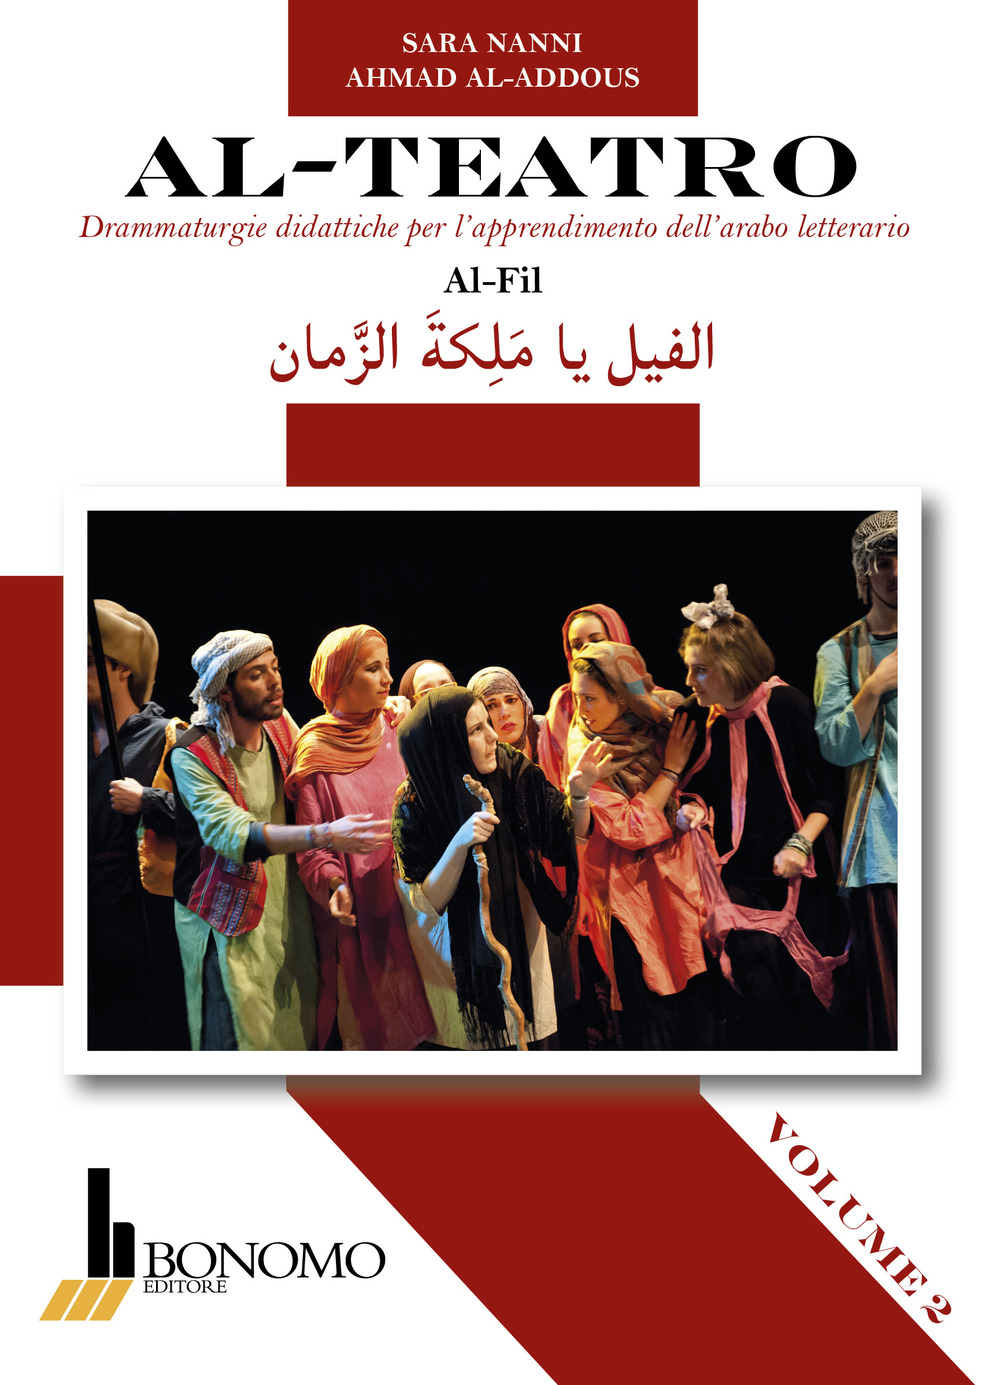 Al-teatro. Drammaturgie didattiche per l'apprendimento dell'arabo letterario. Ediz. araba e italiana. Vol. 2: Al-Fil